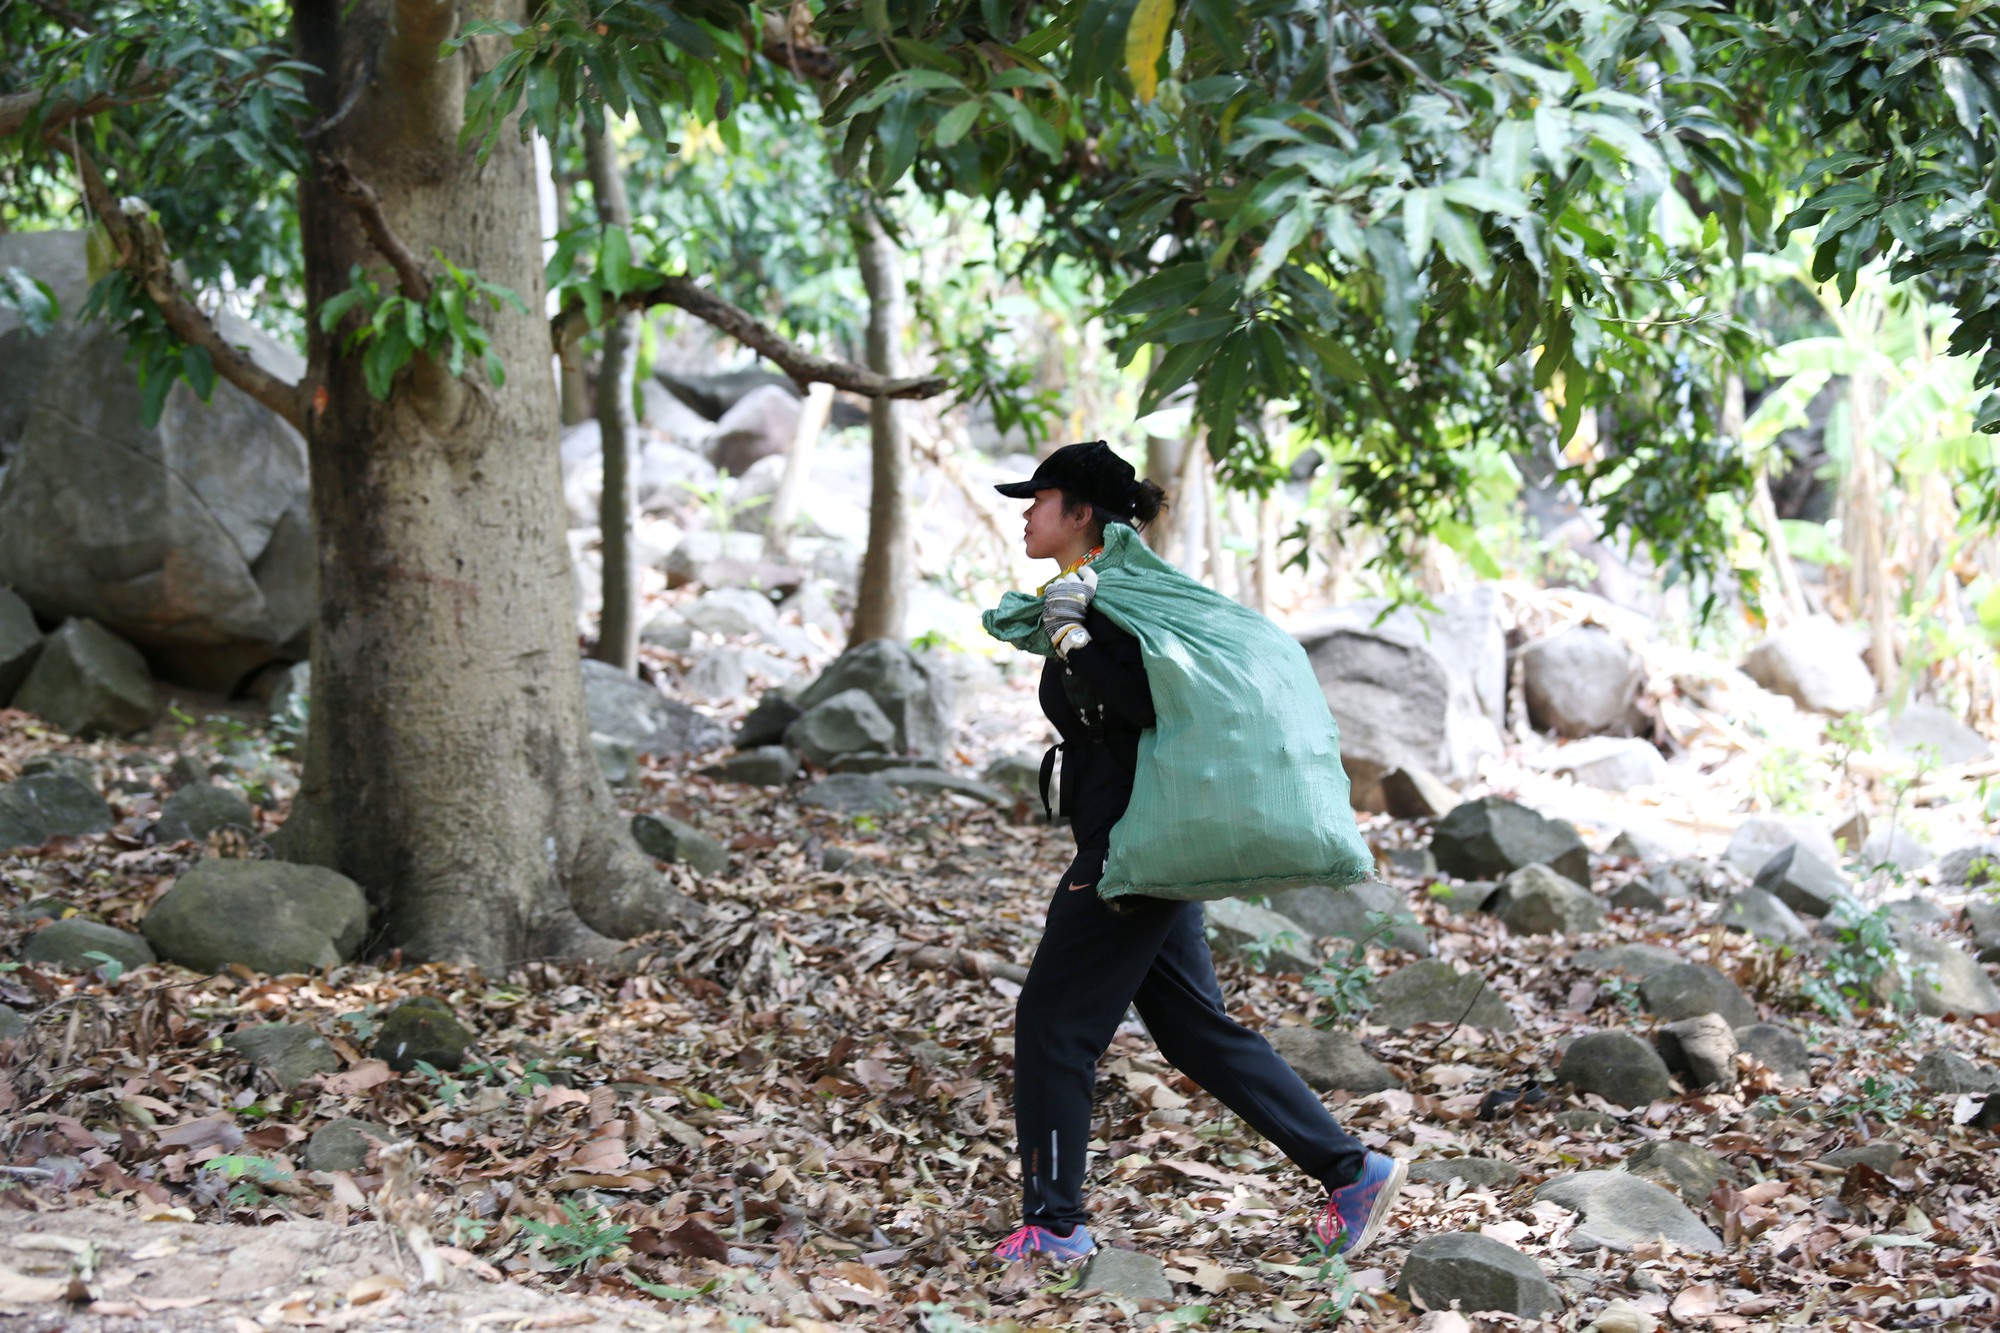 Tây Ninh: Hàng trăm bạn trẻ kết nối hành trình xanh ở núi Bà Đen - Ảnh 4.